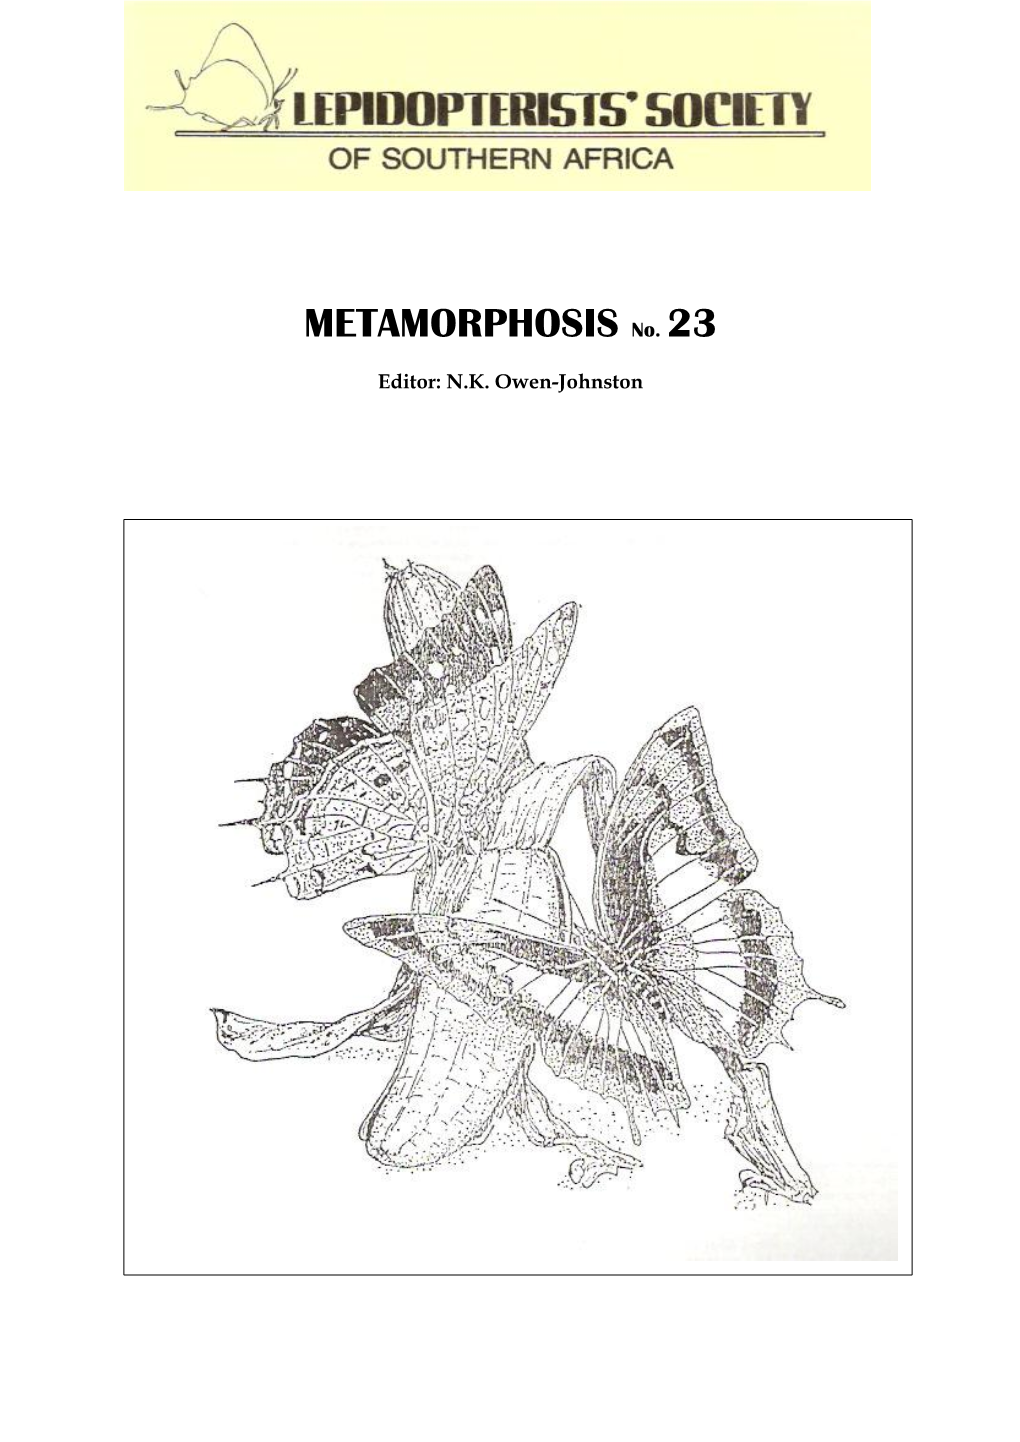 METAMORPHOSIS No. 23